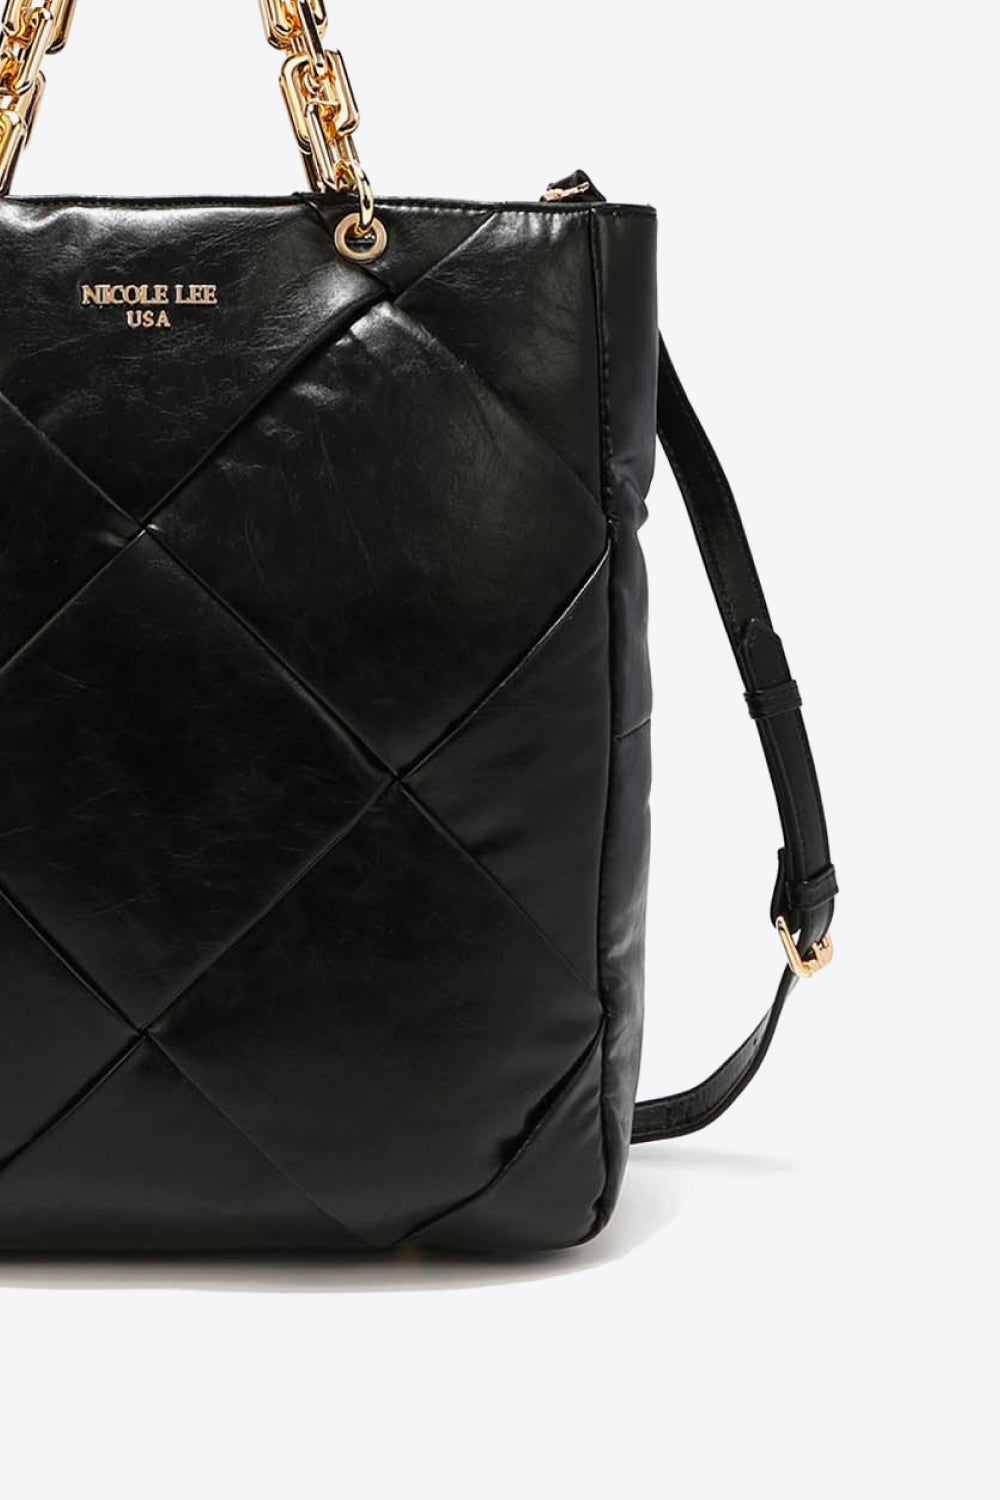 Nicole Lee USA Mesmerize Handbag | BAGS & ACCESSORIES | Bags, Bags & Luggage, handbags, Nicole Lee USA, Ship from USA | Trendsi